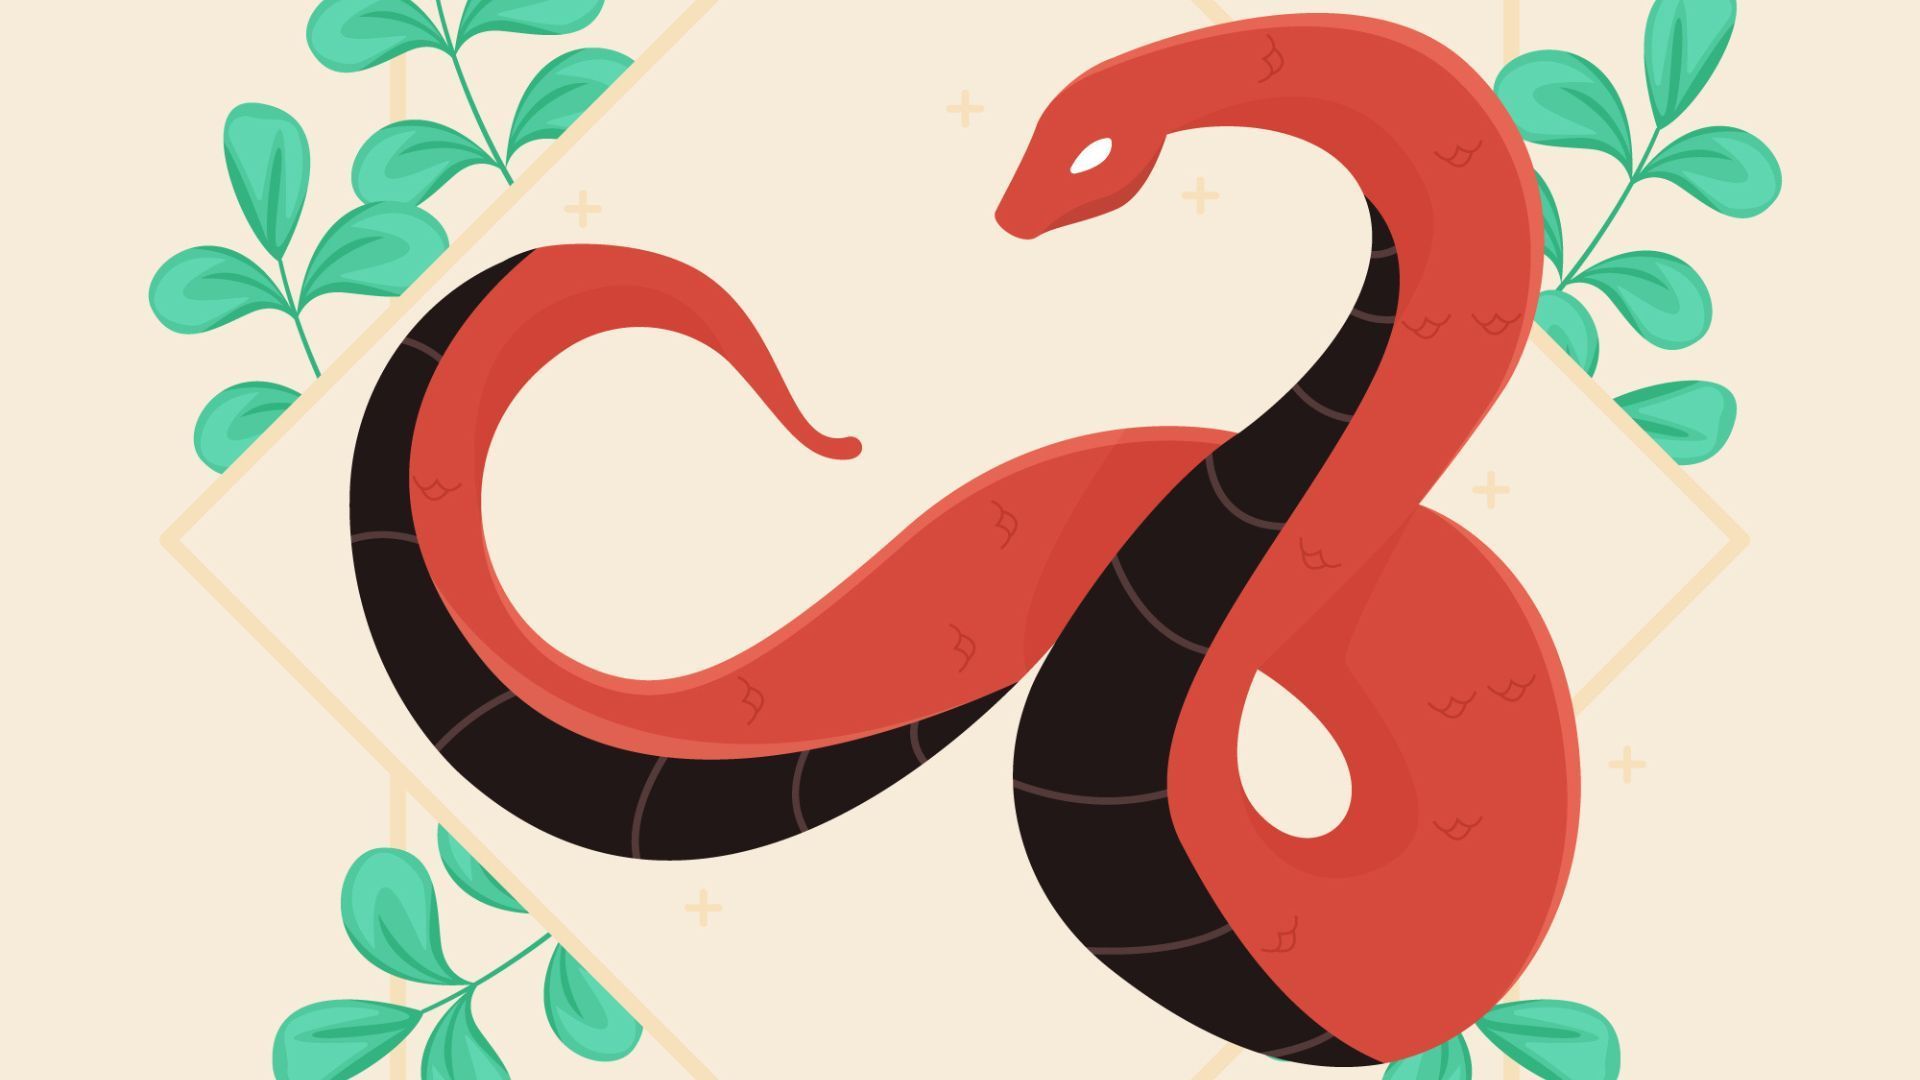 snake zodiac sign